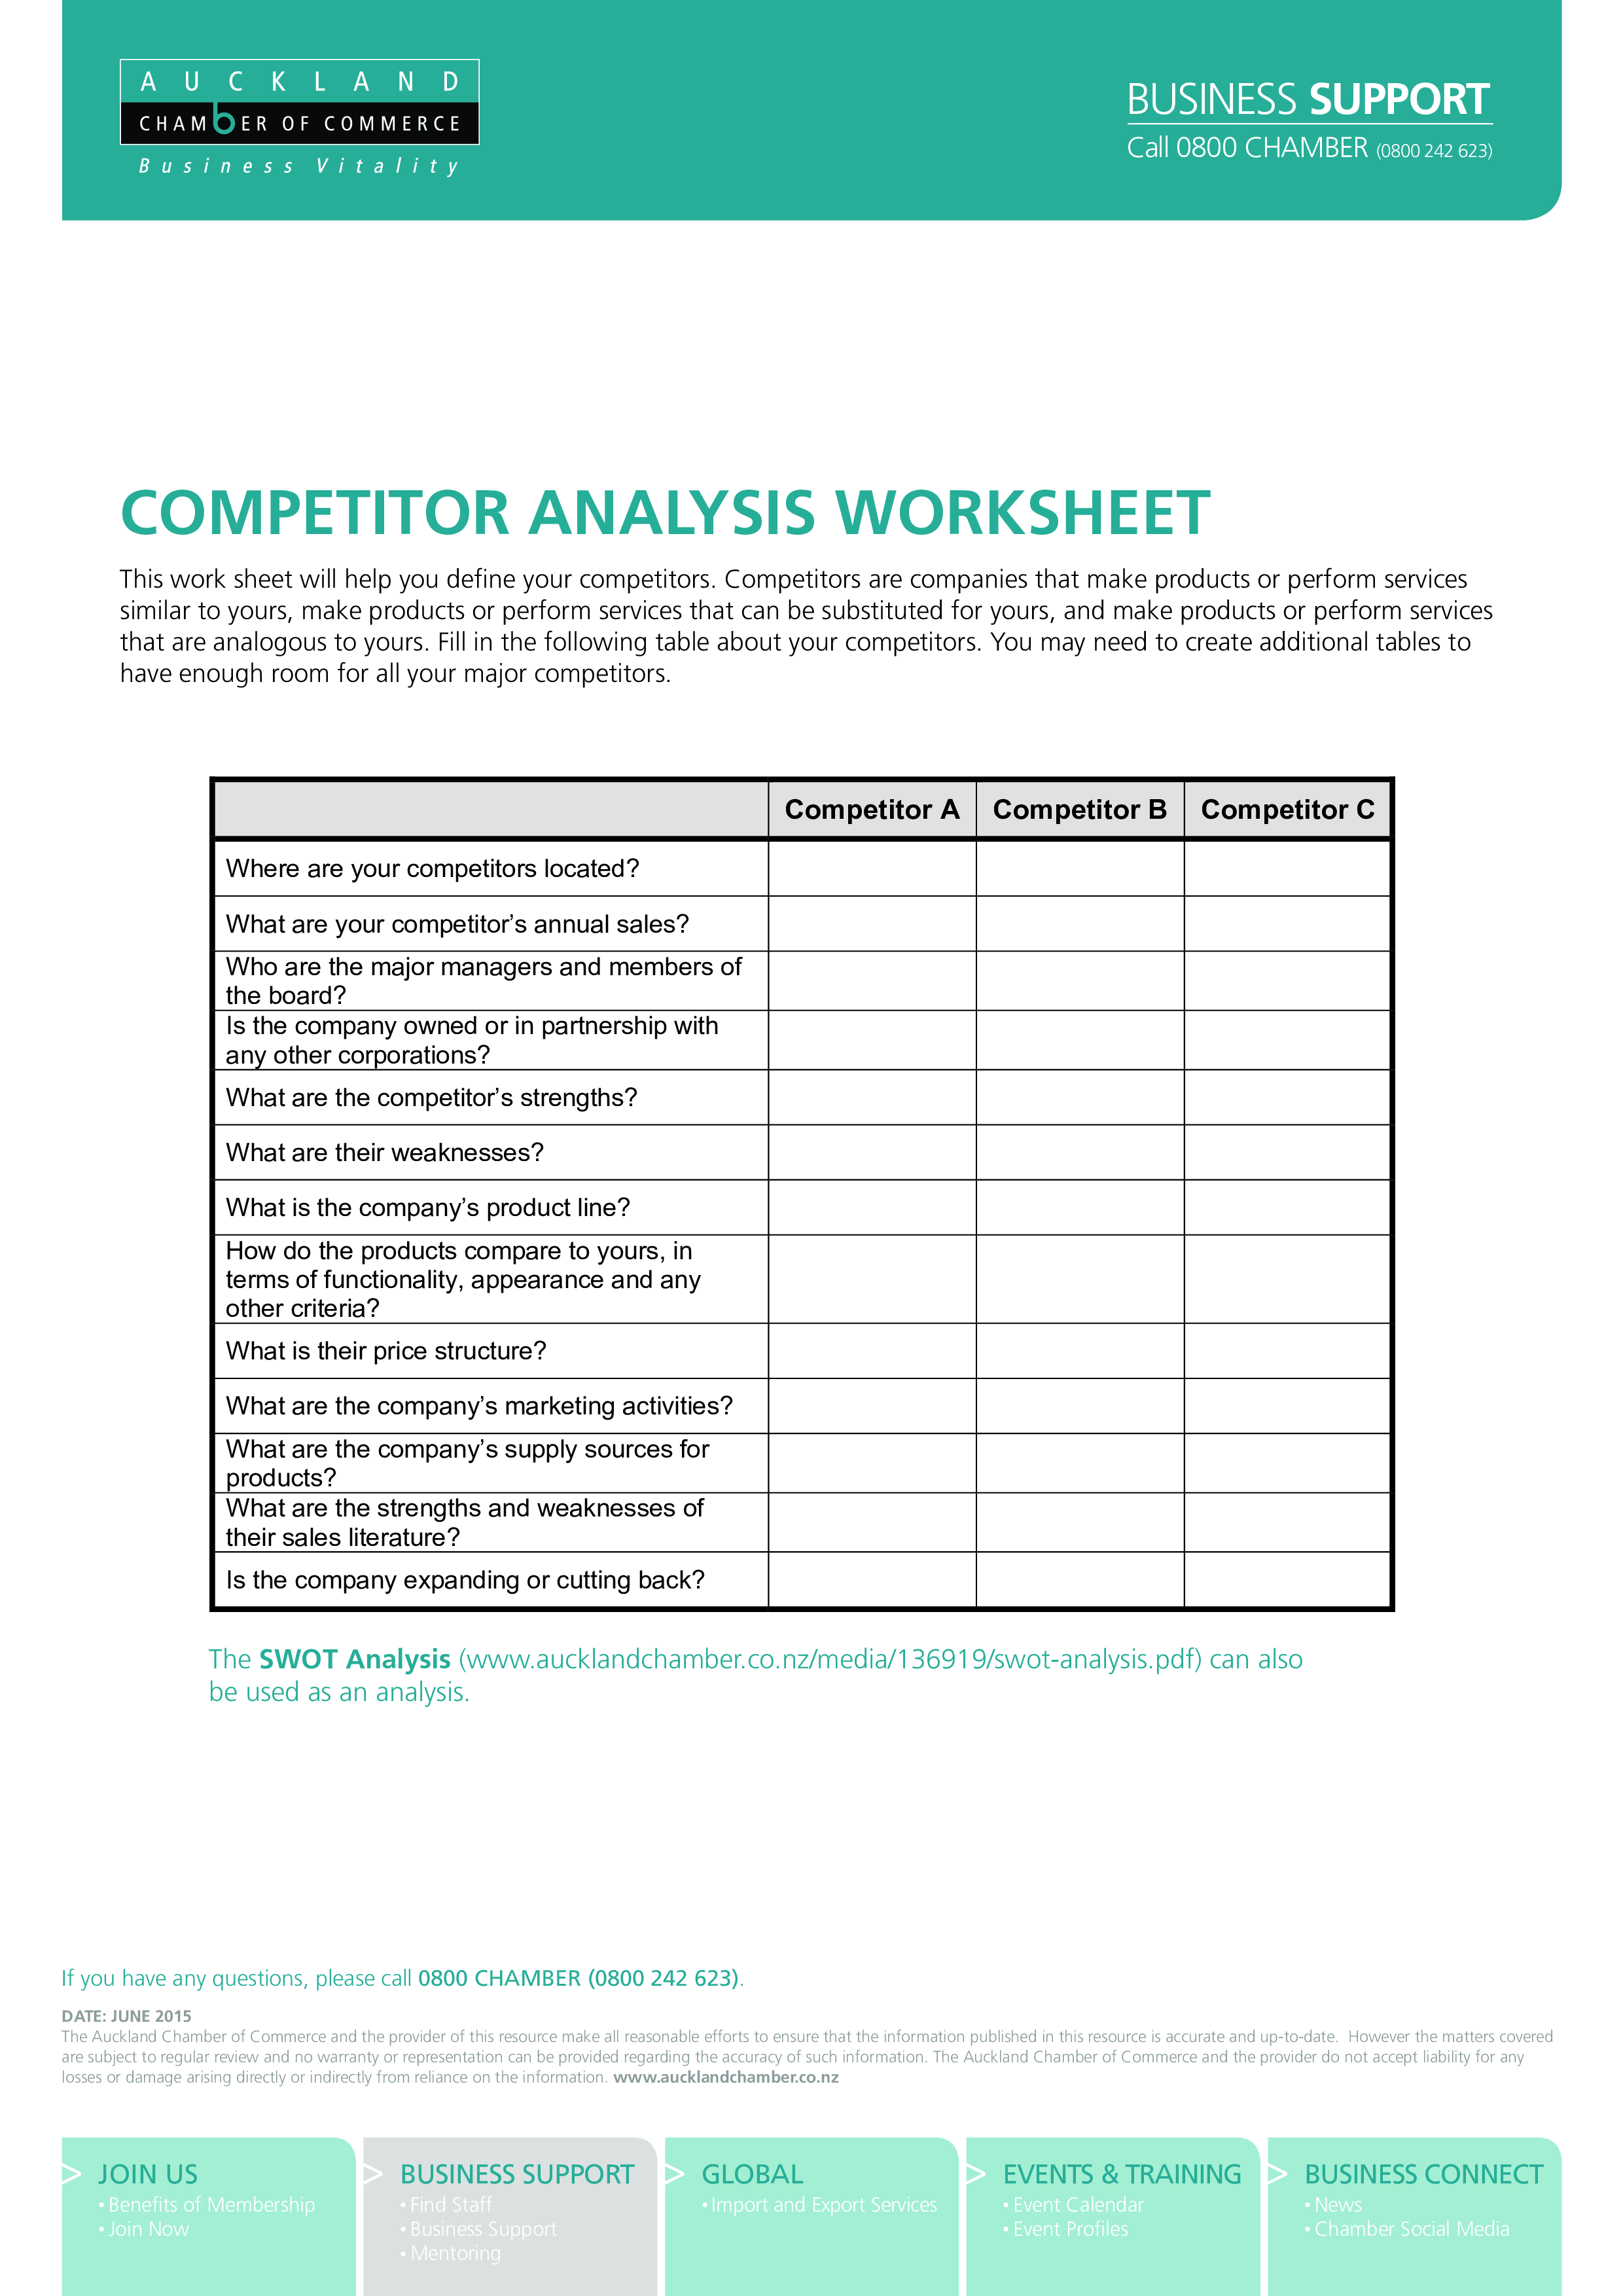 competitor analysis worksheet plantilla imagen principal